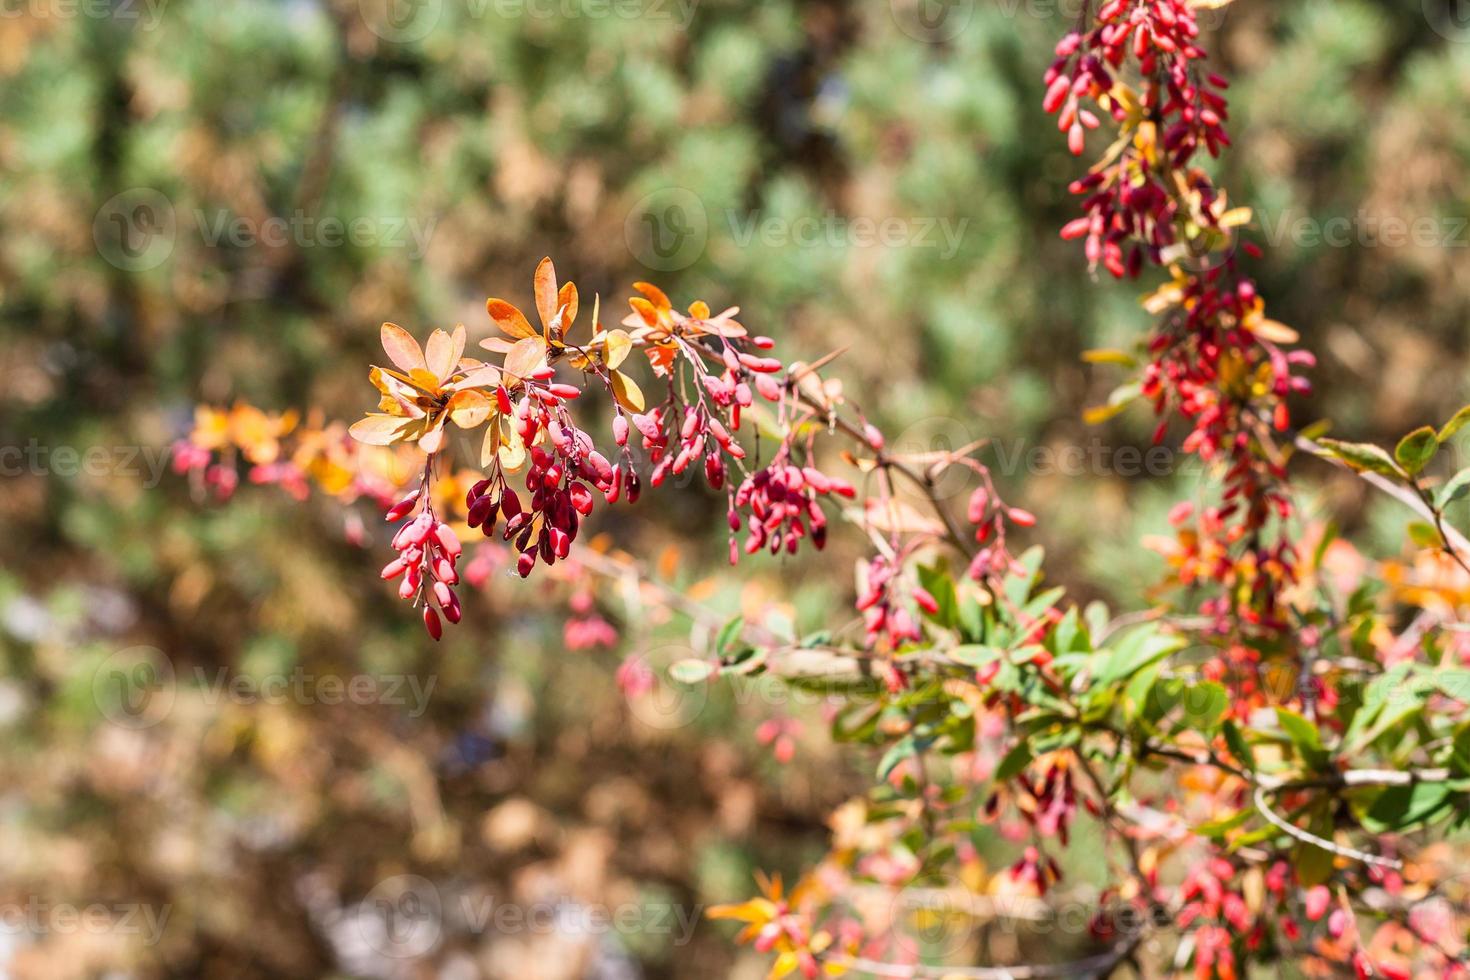 galho de arbusto de bérberis com frutas maduras no outono foto